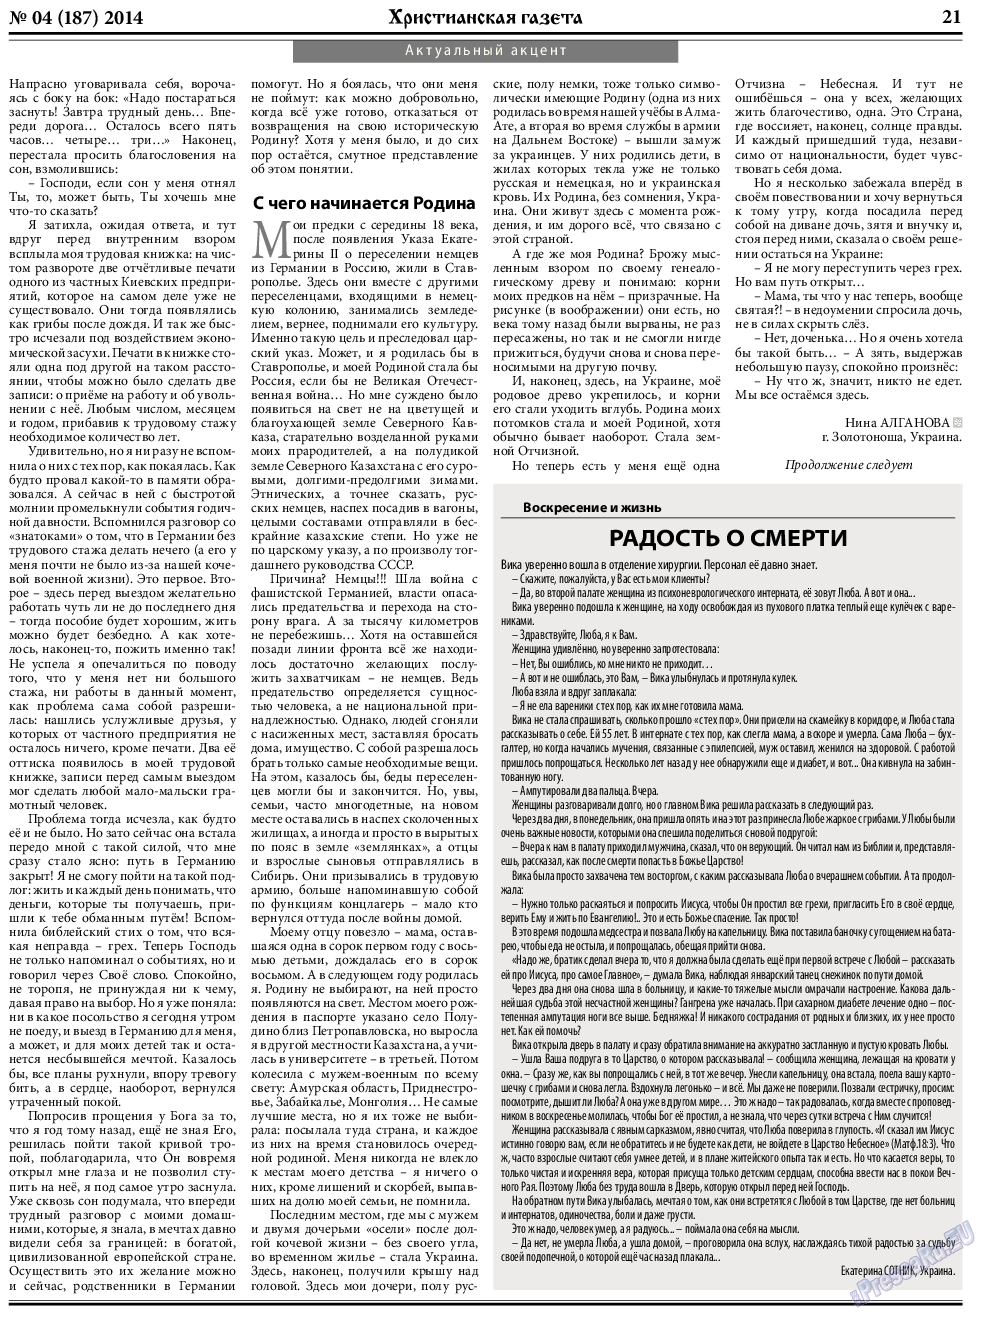 Христианская газета, газета. 2014 №4 стр.29